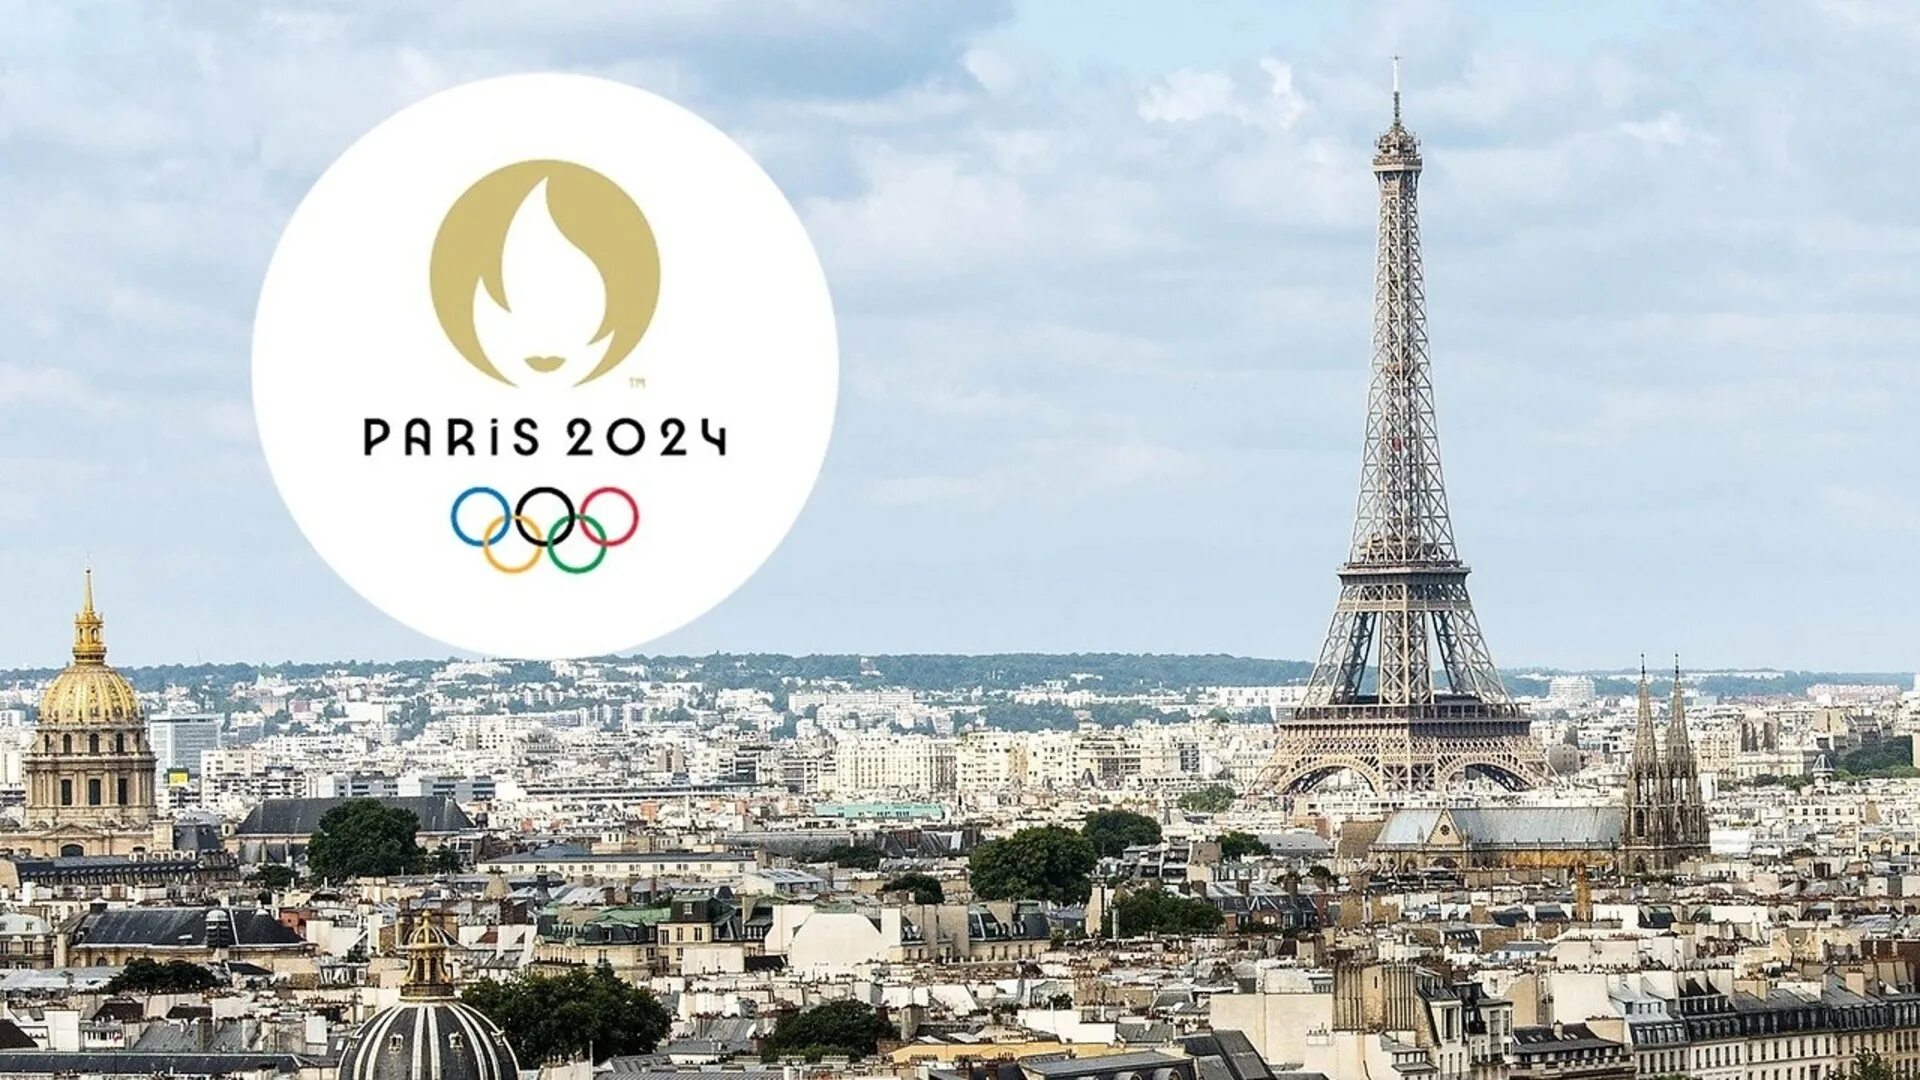 06.02 2024 г. Олимпийские игры 2024 года в Париже. Олимпийских игр–2024 в Париже лого.